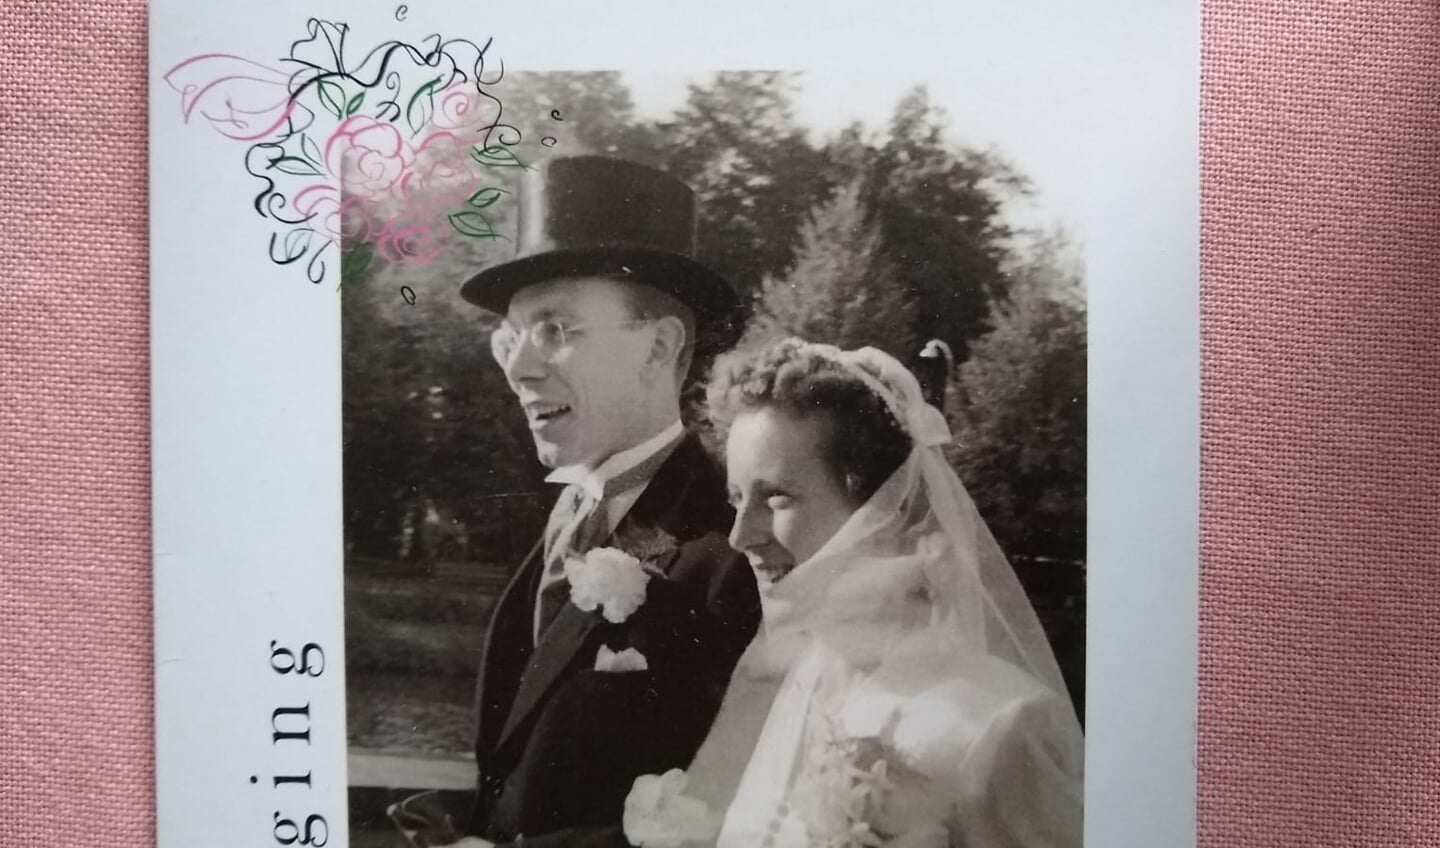 11 oktober 1950: trouwdag van Ben en Carla Ekeler in Hilversum.